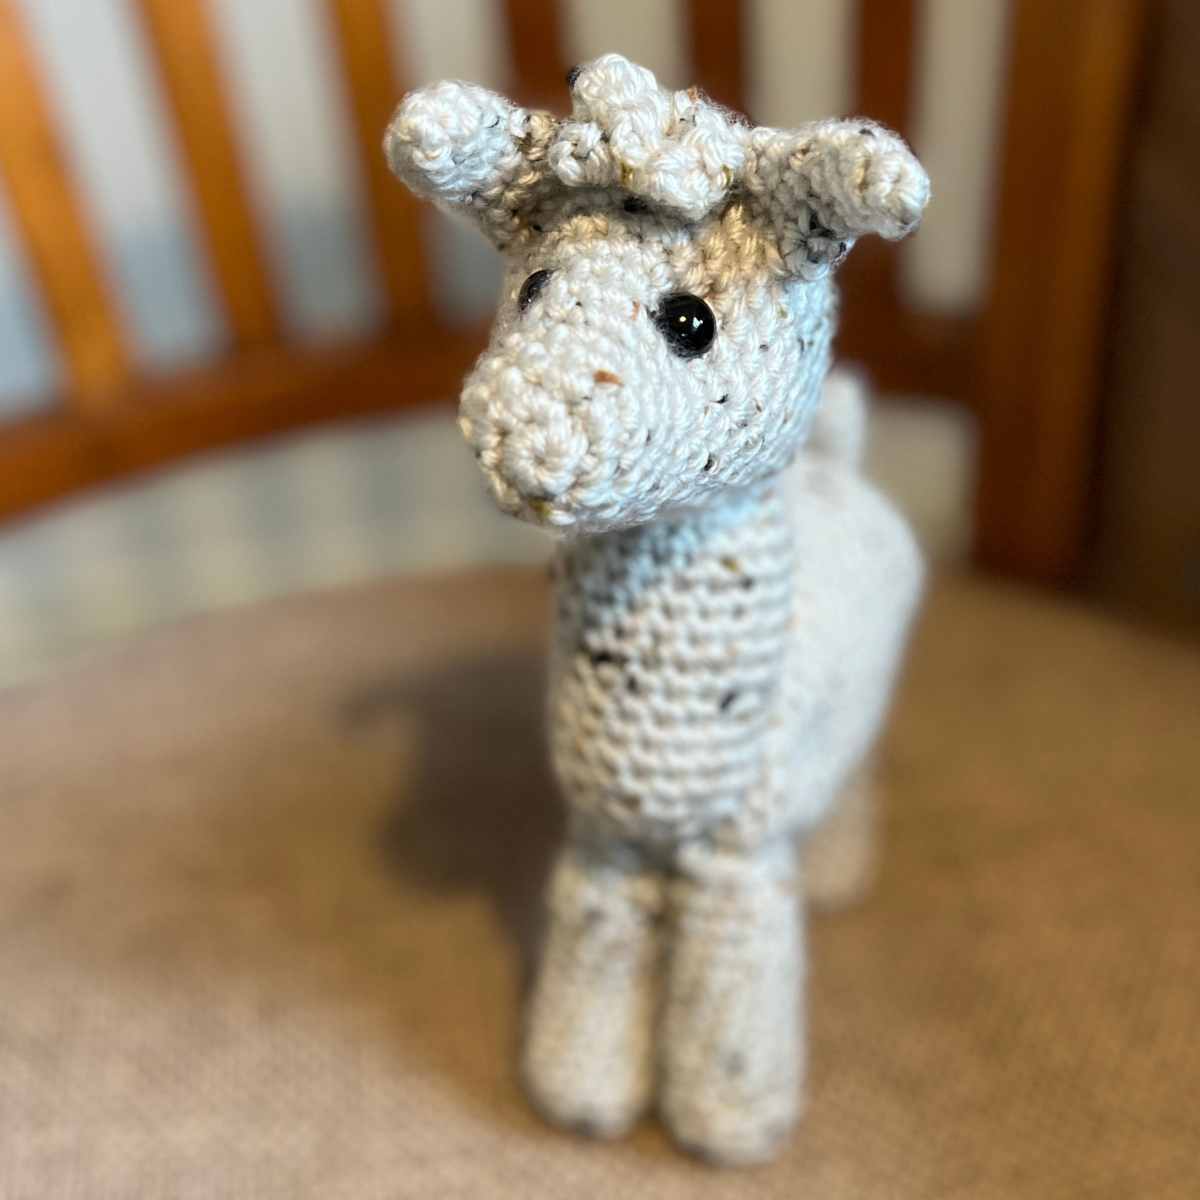 The Best Crochet Tools for Amigurumi - Tiny Curl Crochet